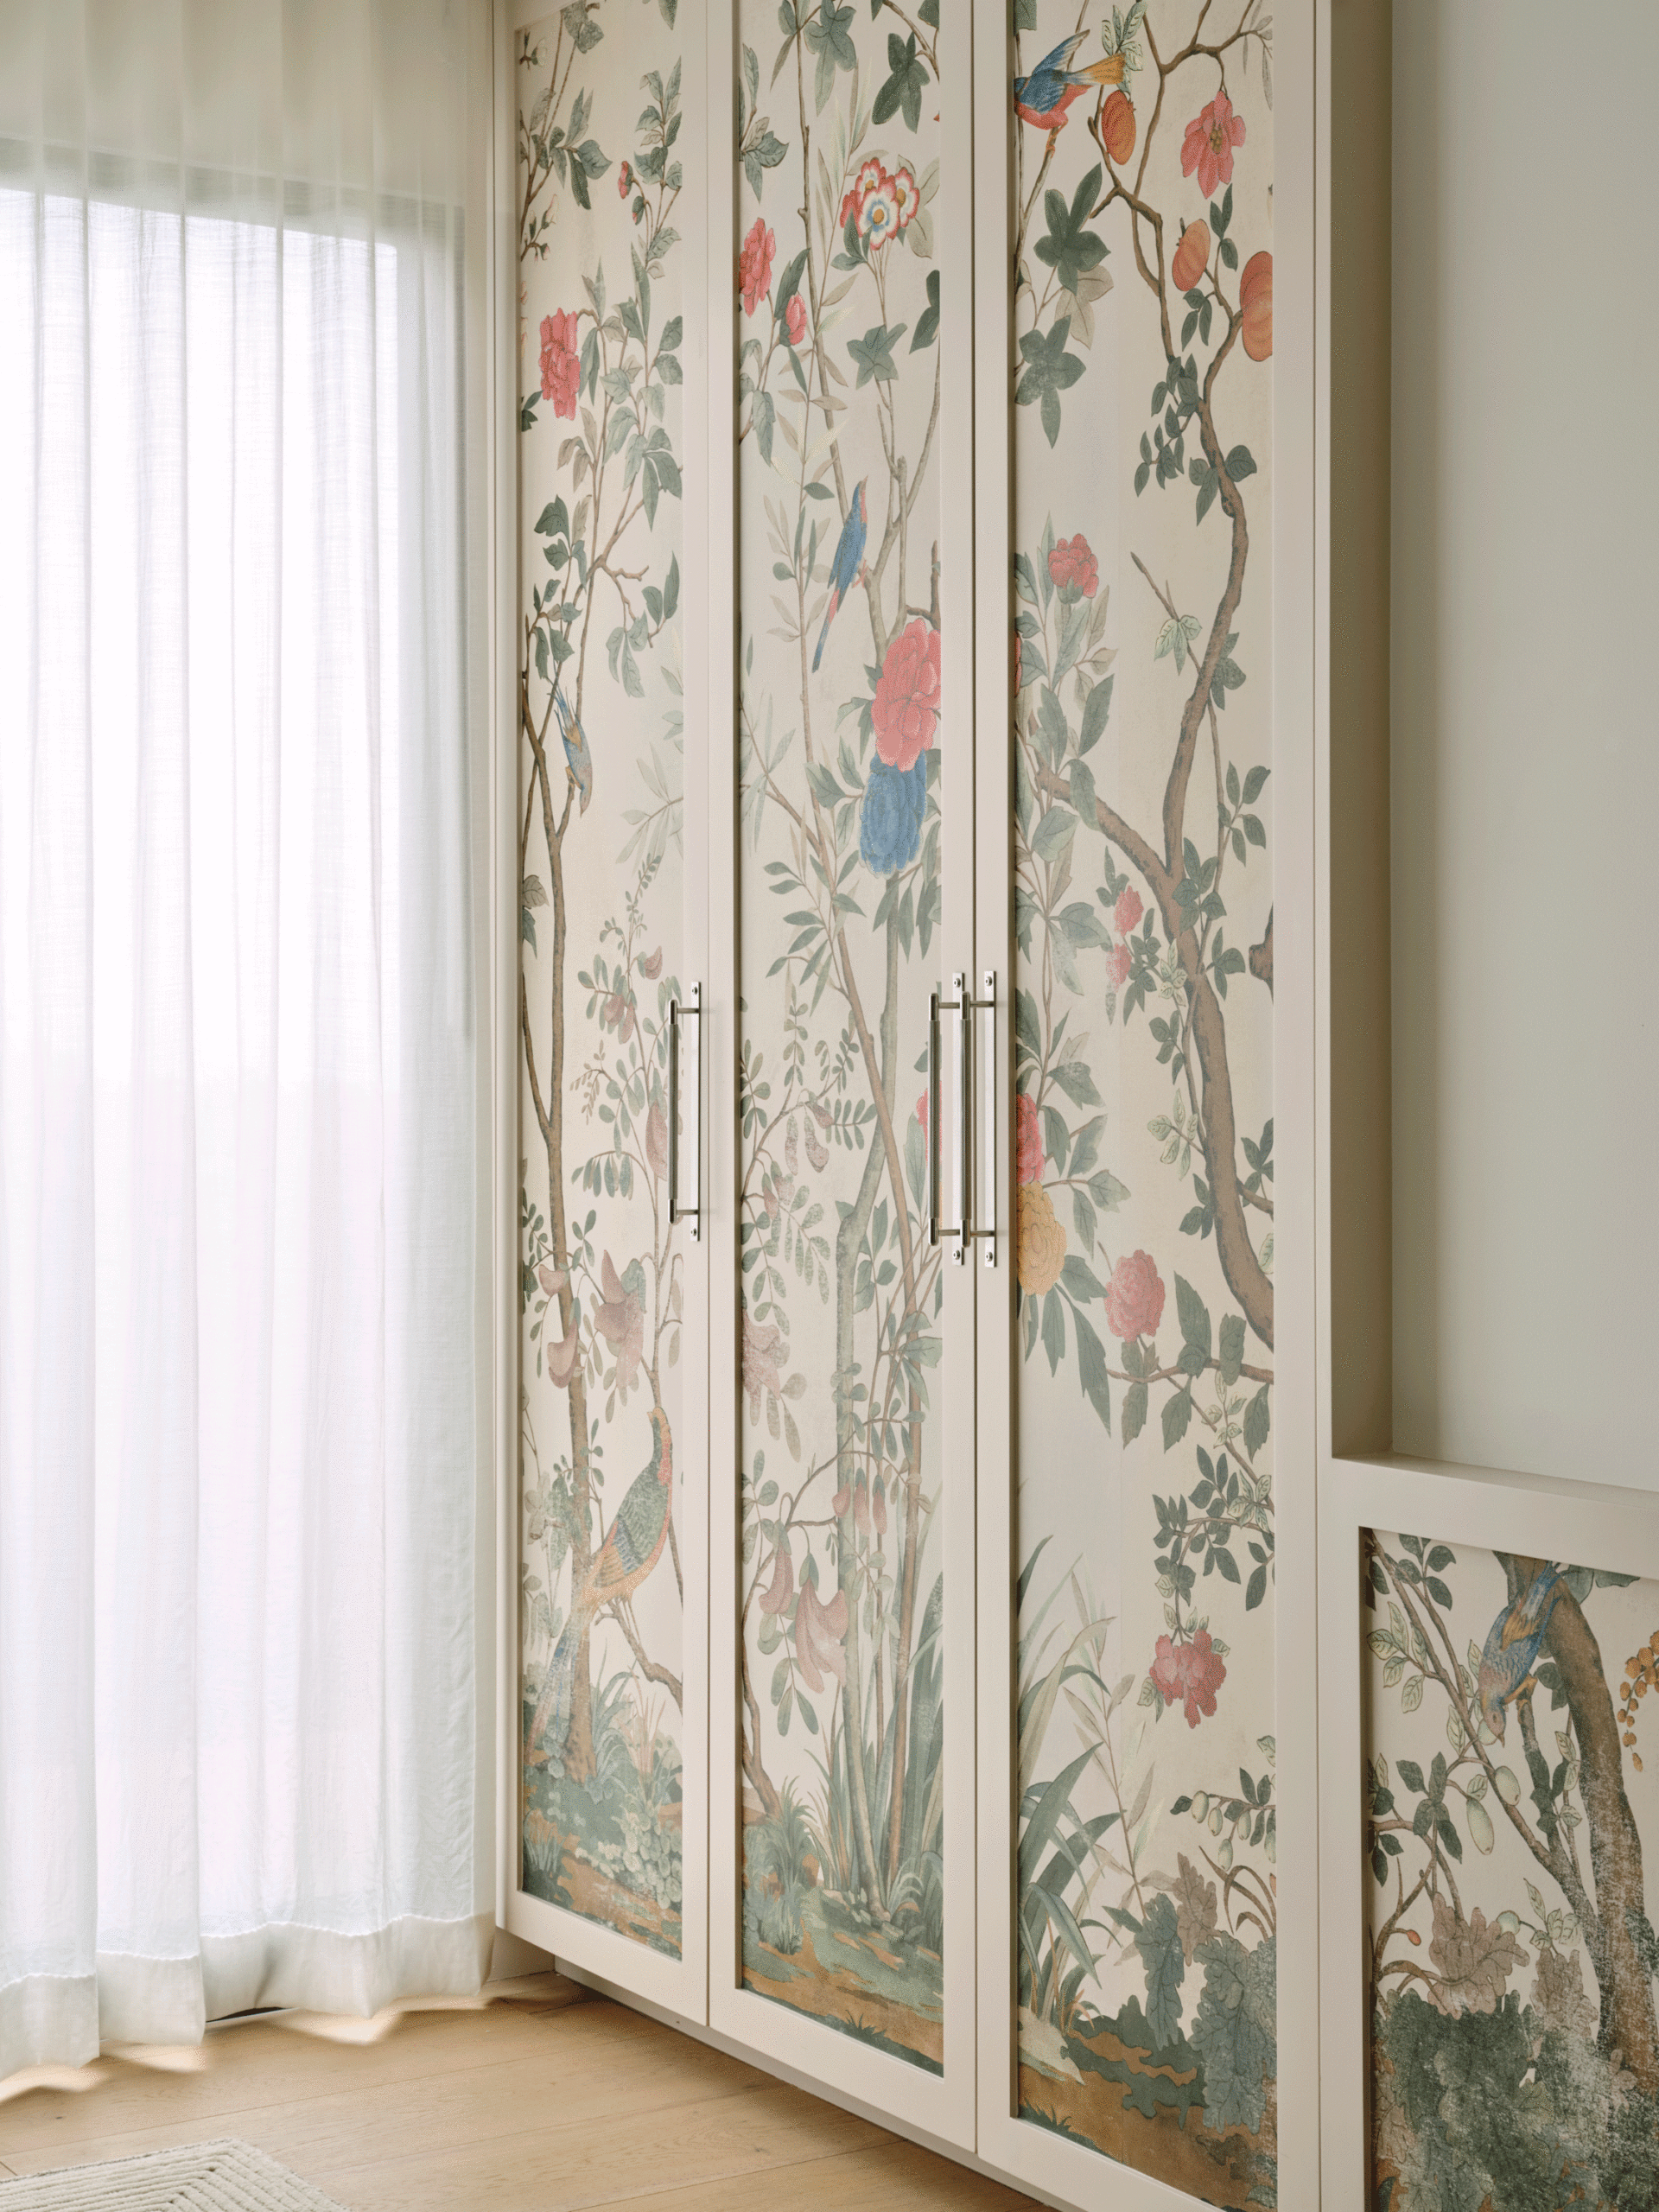 wallpapered closet doors